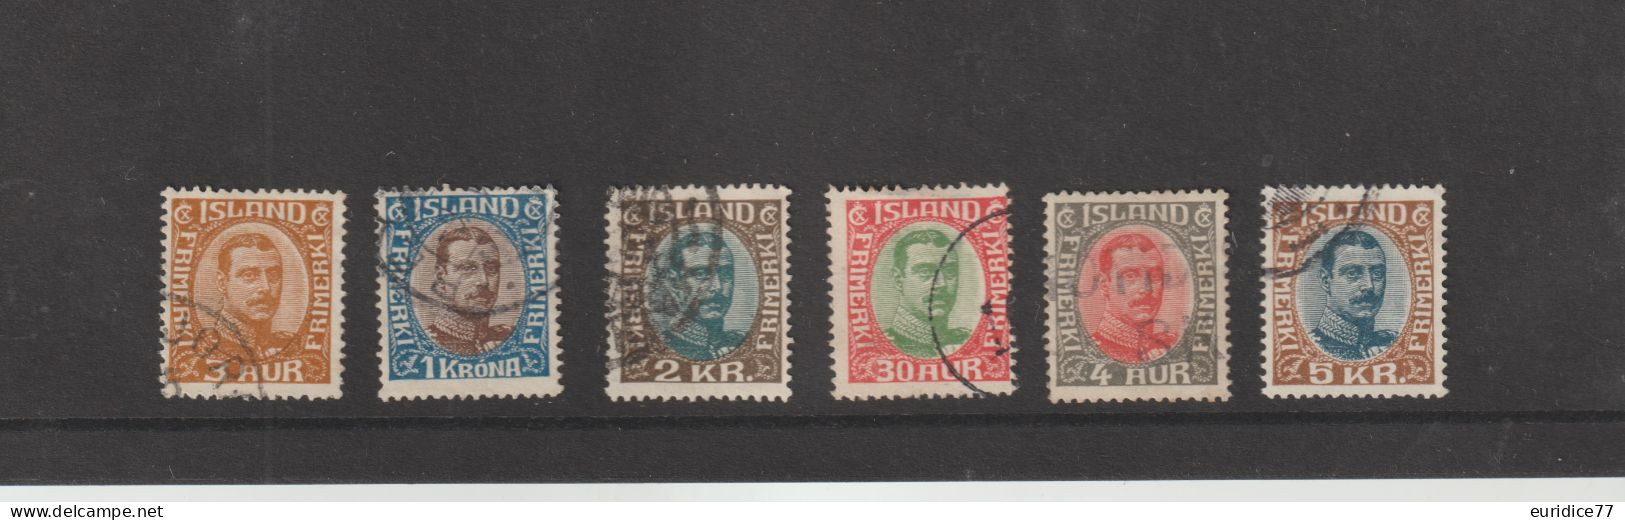 Islande 1920 - Yvert 83,84,92,95,96 Oblitere - Gebraucht